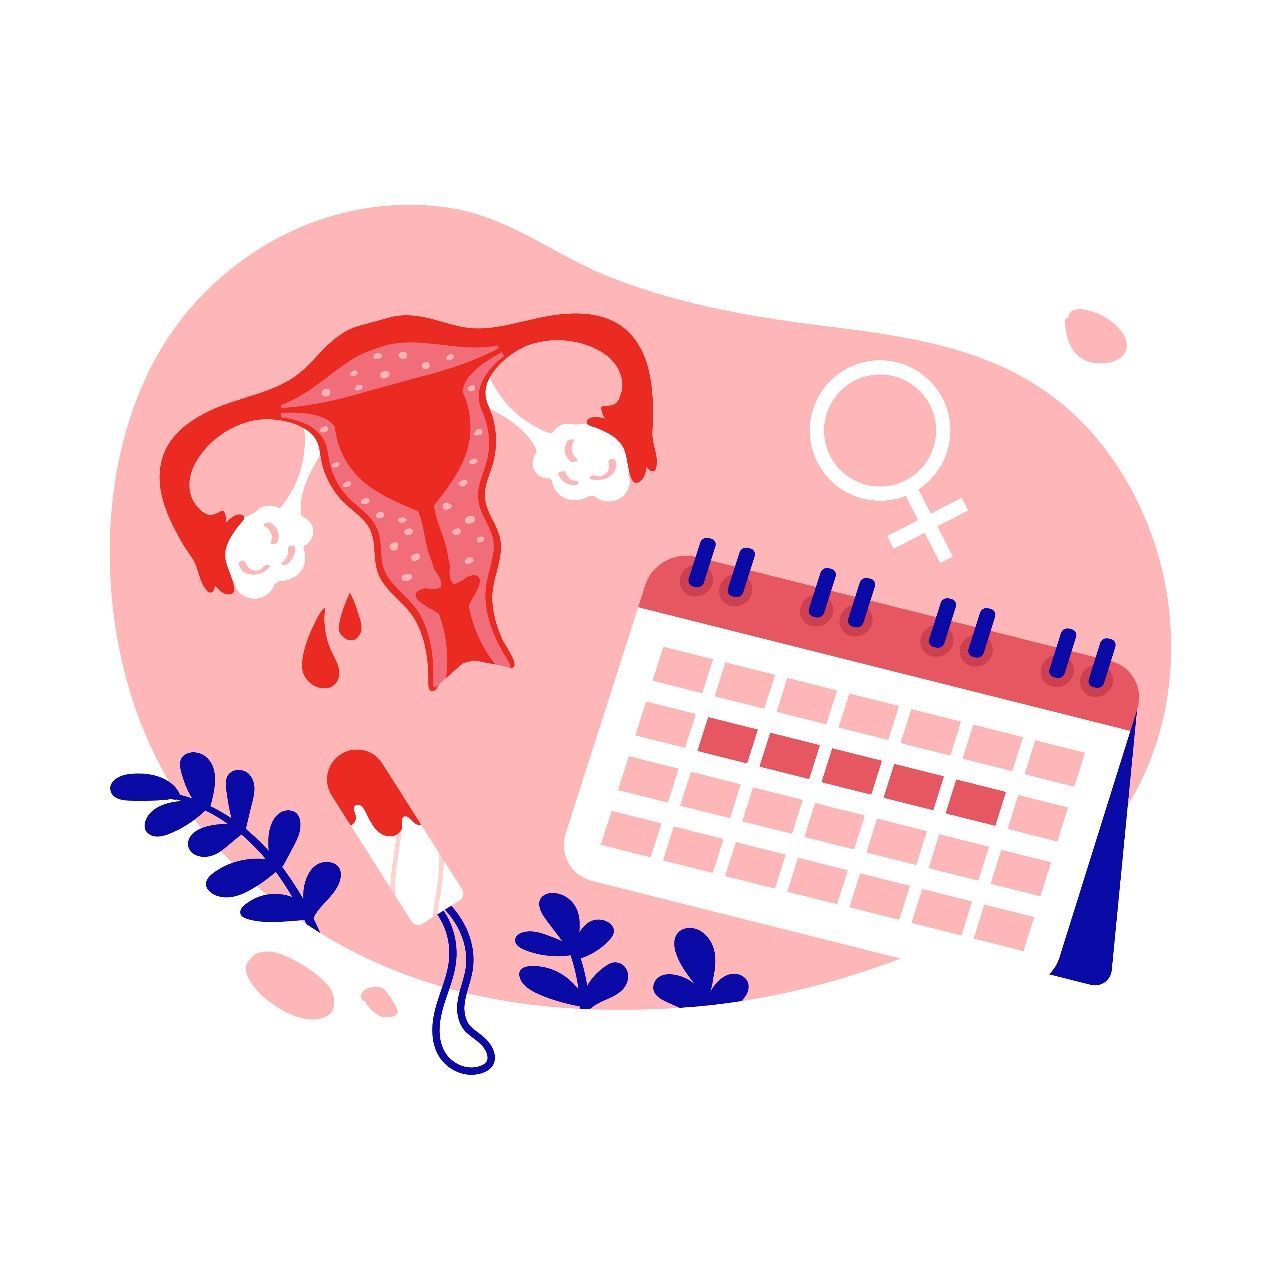 How do I regulate my menstrual periods naturally?